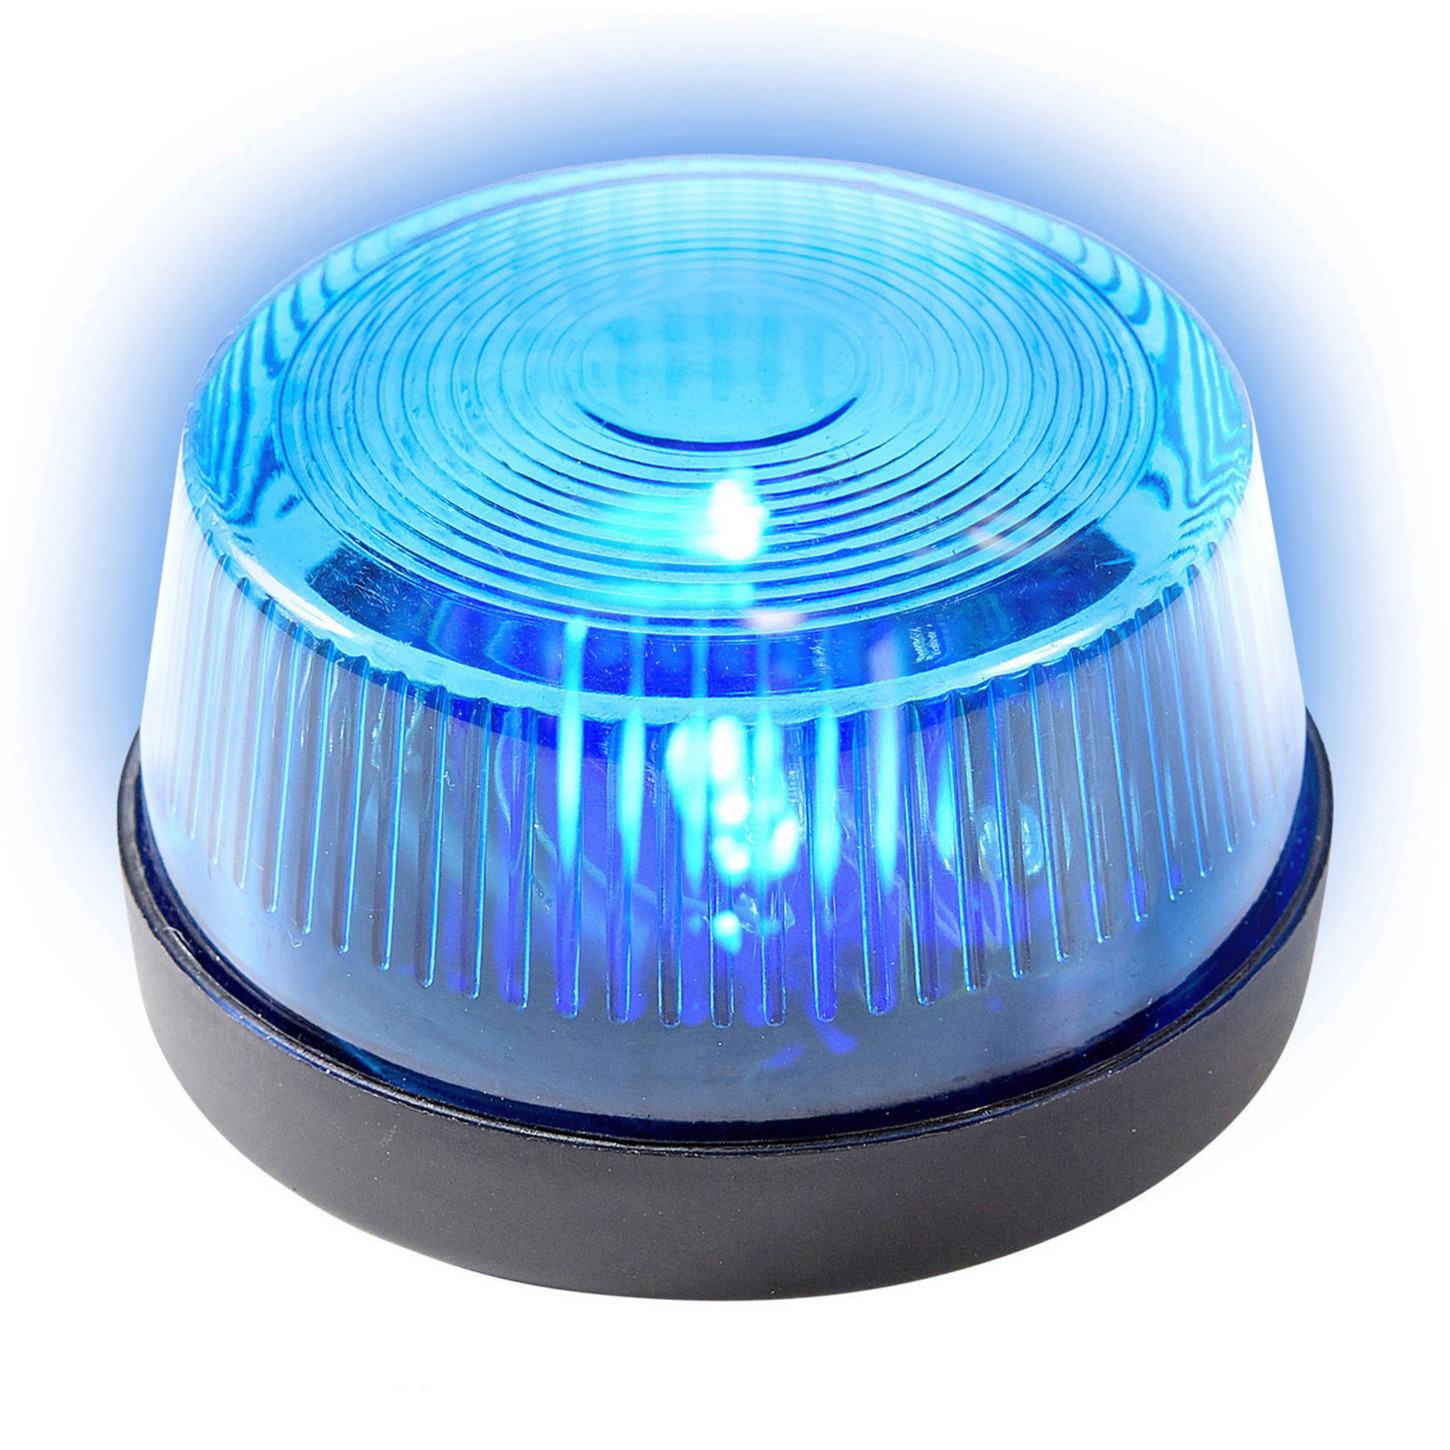 Signaallamp signaallicht blauw led licht 10 cm politie speelgoed feestverlichting